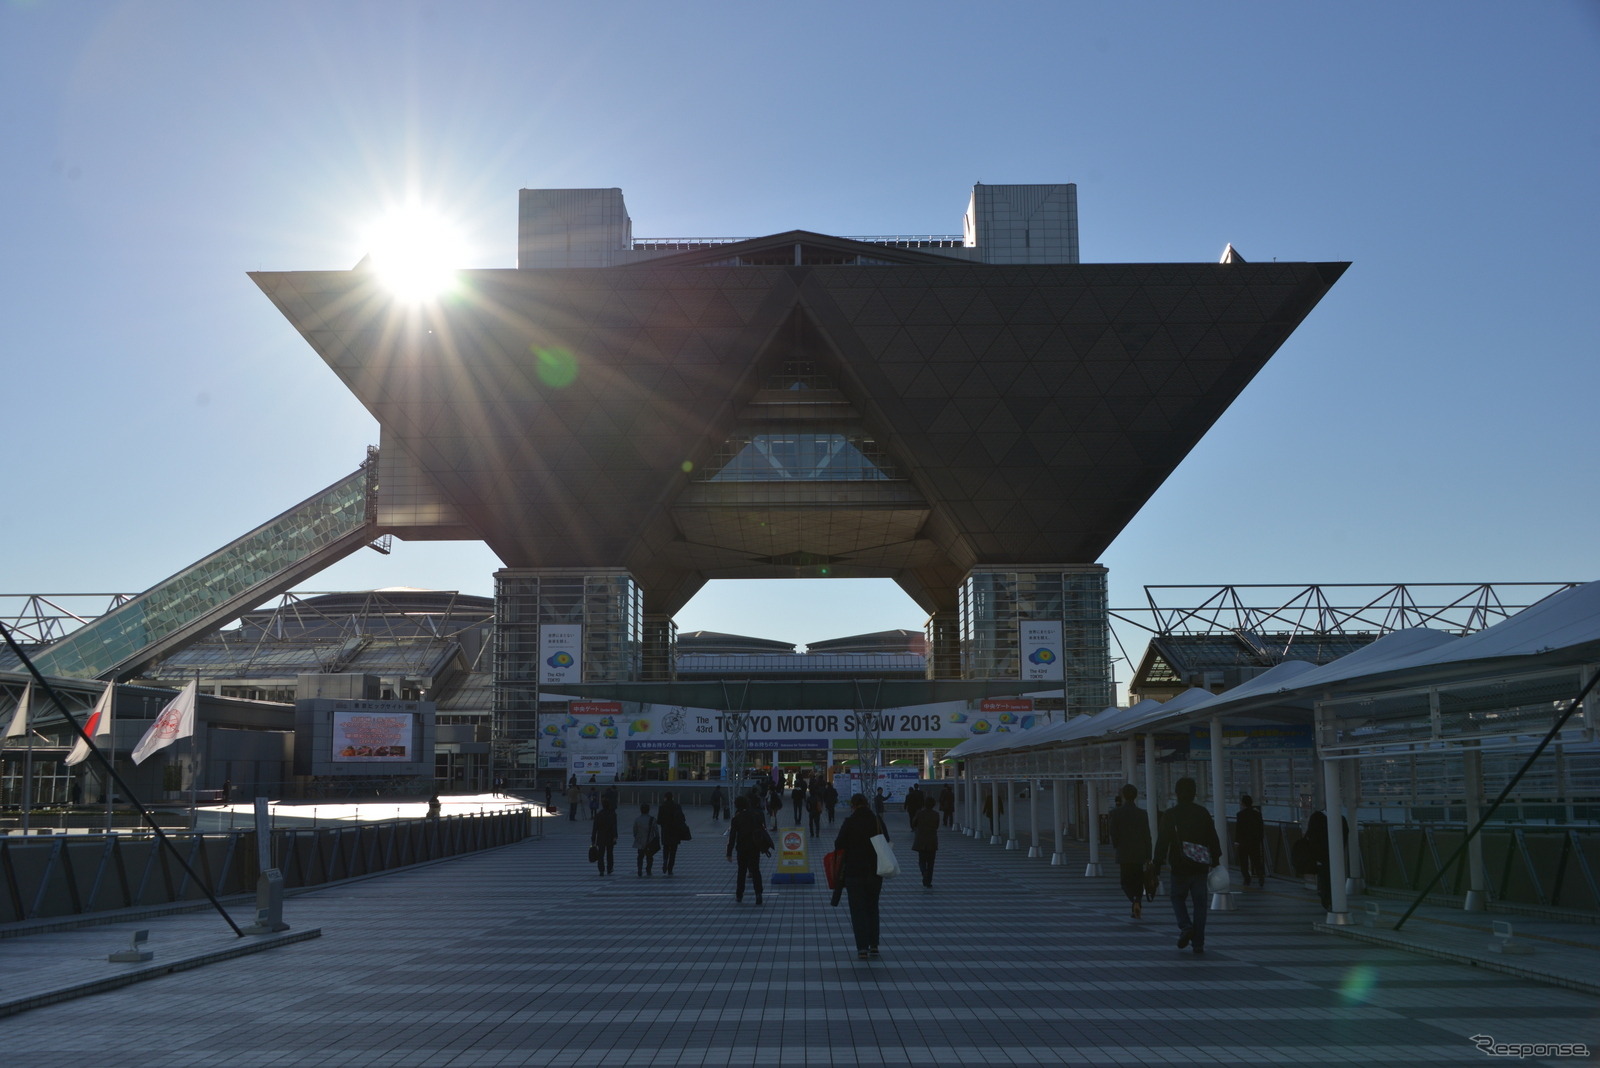 「東京お台場FreeWiFi」はゆりかもめ8駅のほか東京臨海副都心の複数の施設で利用できる。写真はFreeWiFiが利用できる東京ビッグサイト。